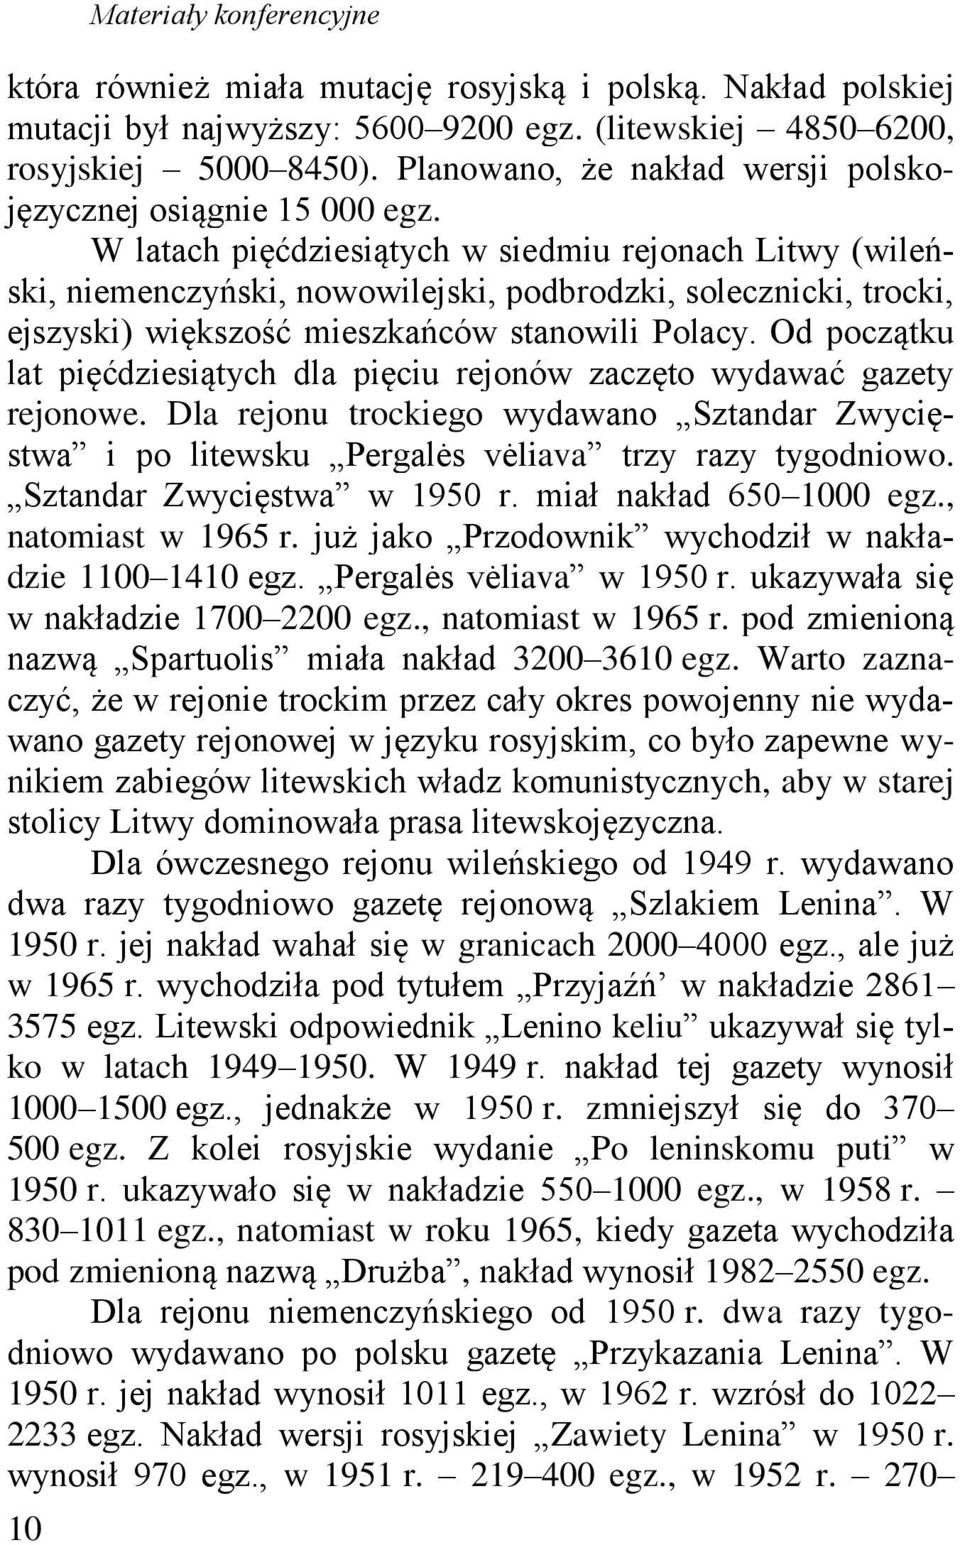 W latach pięćdziesiątych w siedmiu rejonach Litwy (wileński, niemenczyński, nowowilejski, podbrodzki, solecznicki, trocki, ejszyski) większość mieszkańców stanowili Polacy.